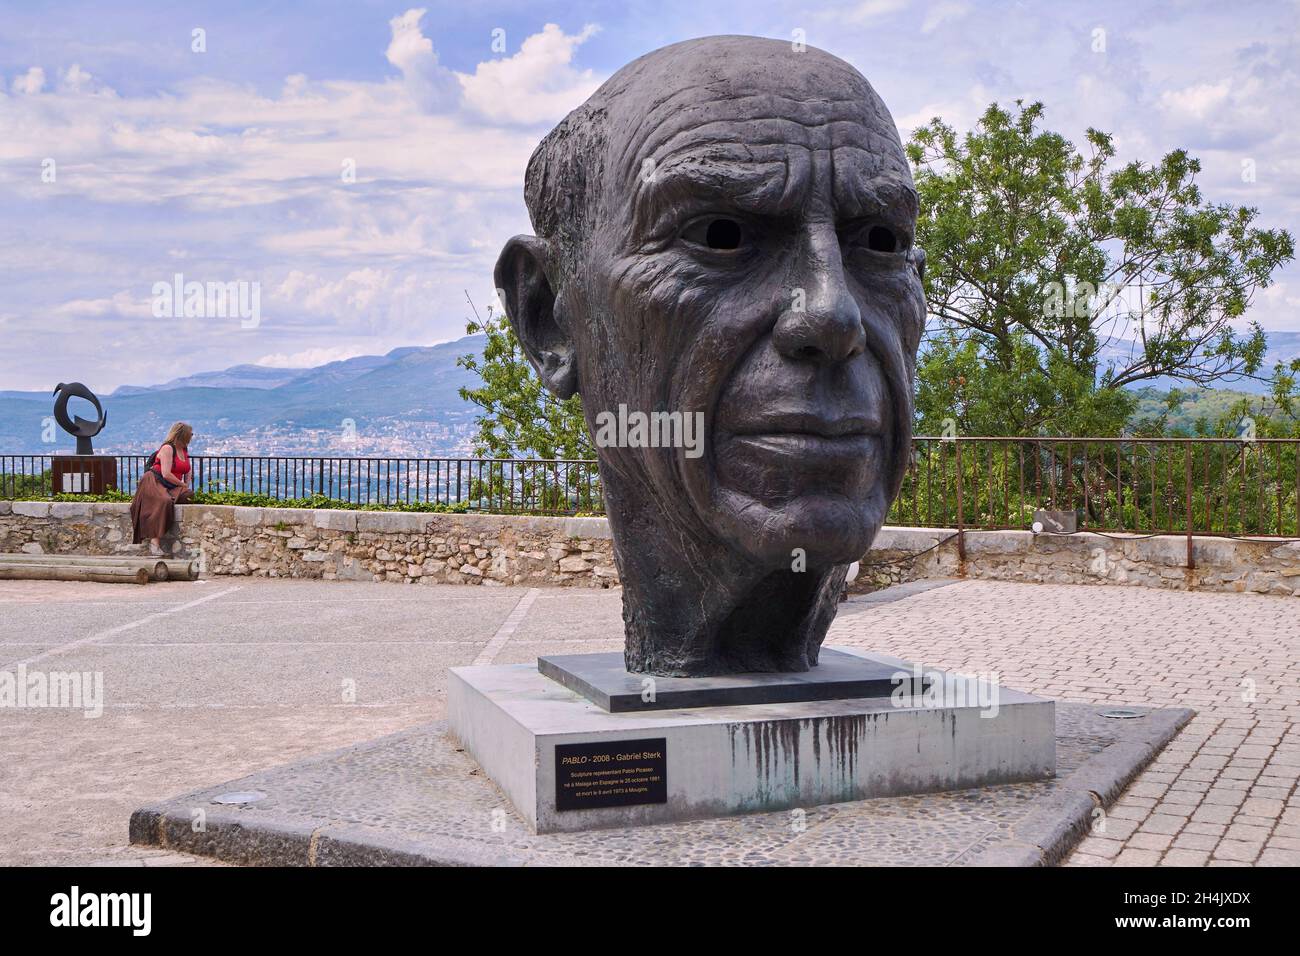 France, Alpes Maritimes, Mougins, statue de Pablo Picasso du sculpteur néerlandais Gabriel Sterk Banque D'Images